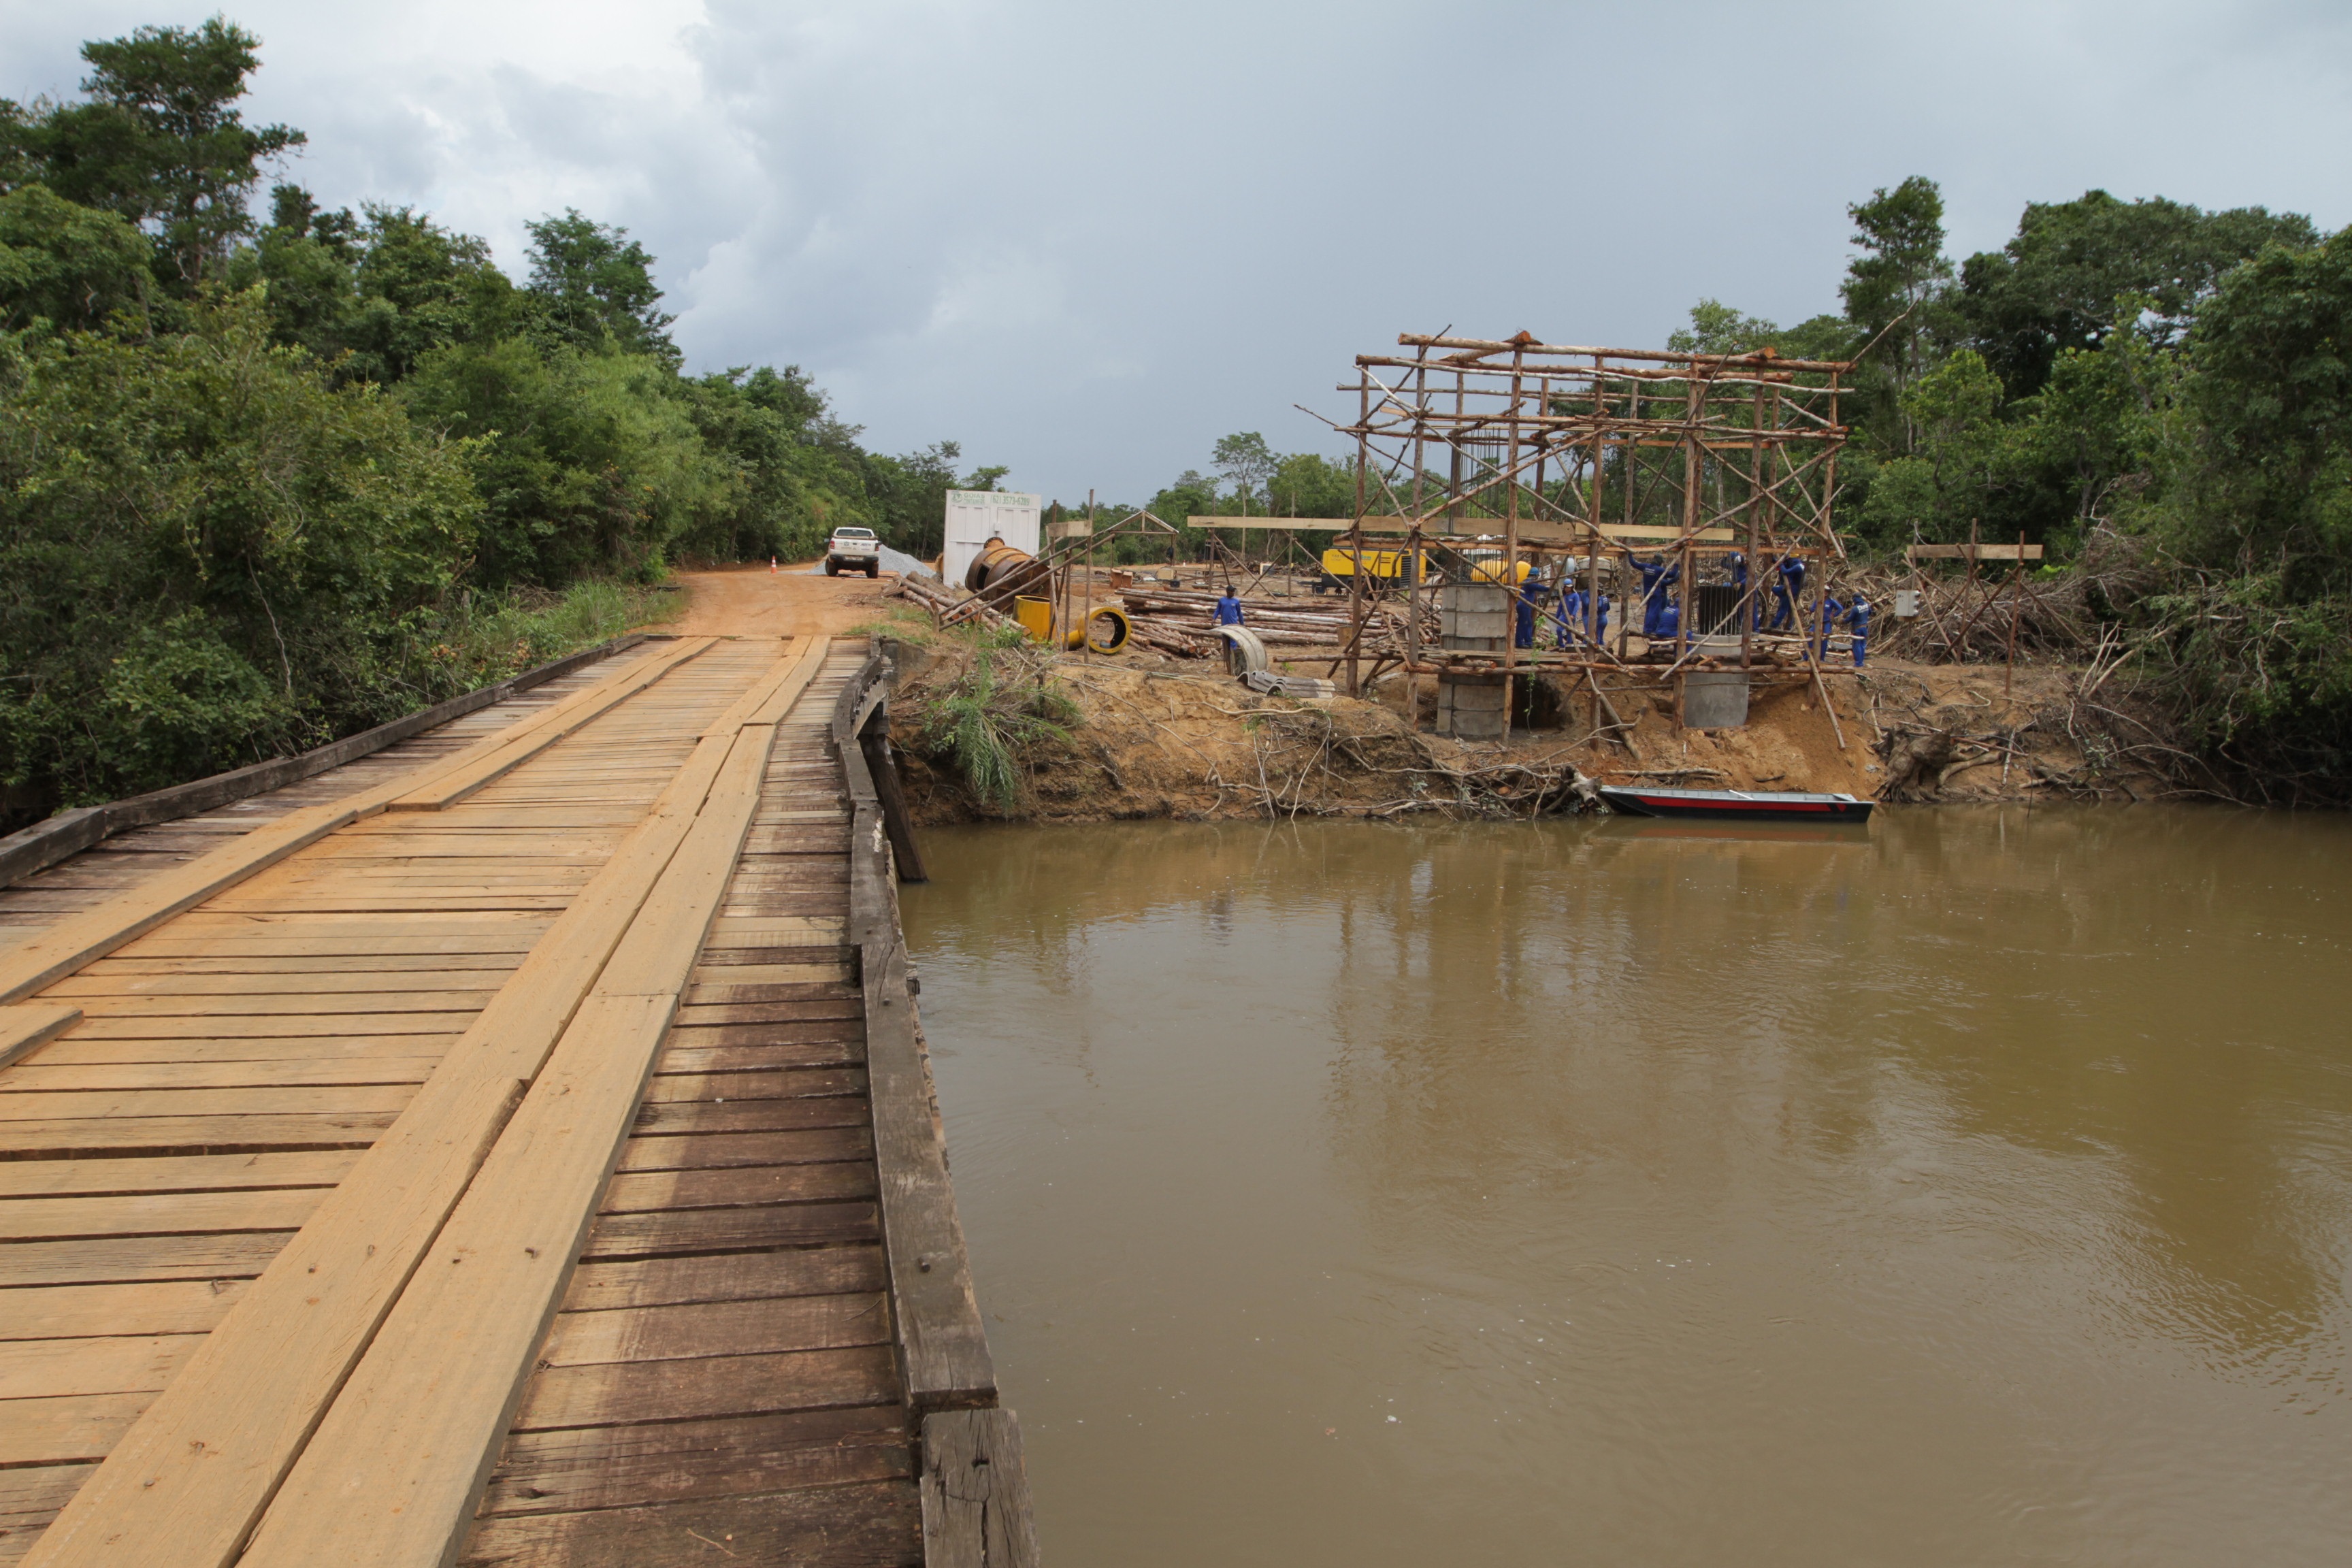 Ponte nova está sendo construída bem ao lado da velha ponte de madeira, por onde flui o trânsito atualmente.